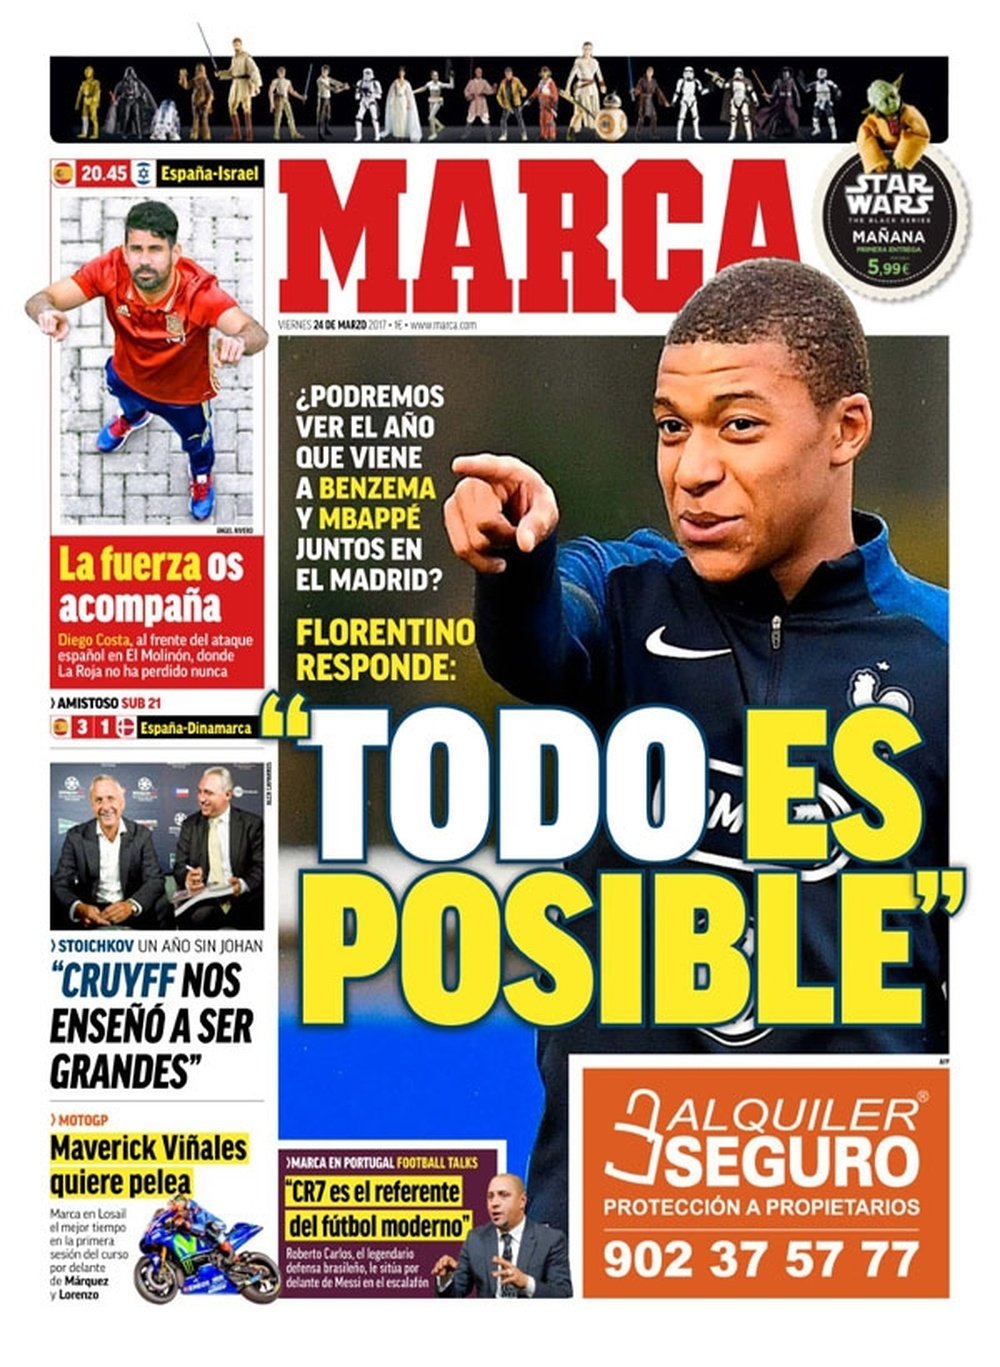 La Une du quotidien sportif espagnol 'Marca' du 24 mars 2017. Marca